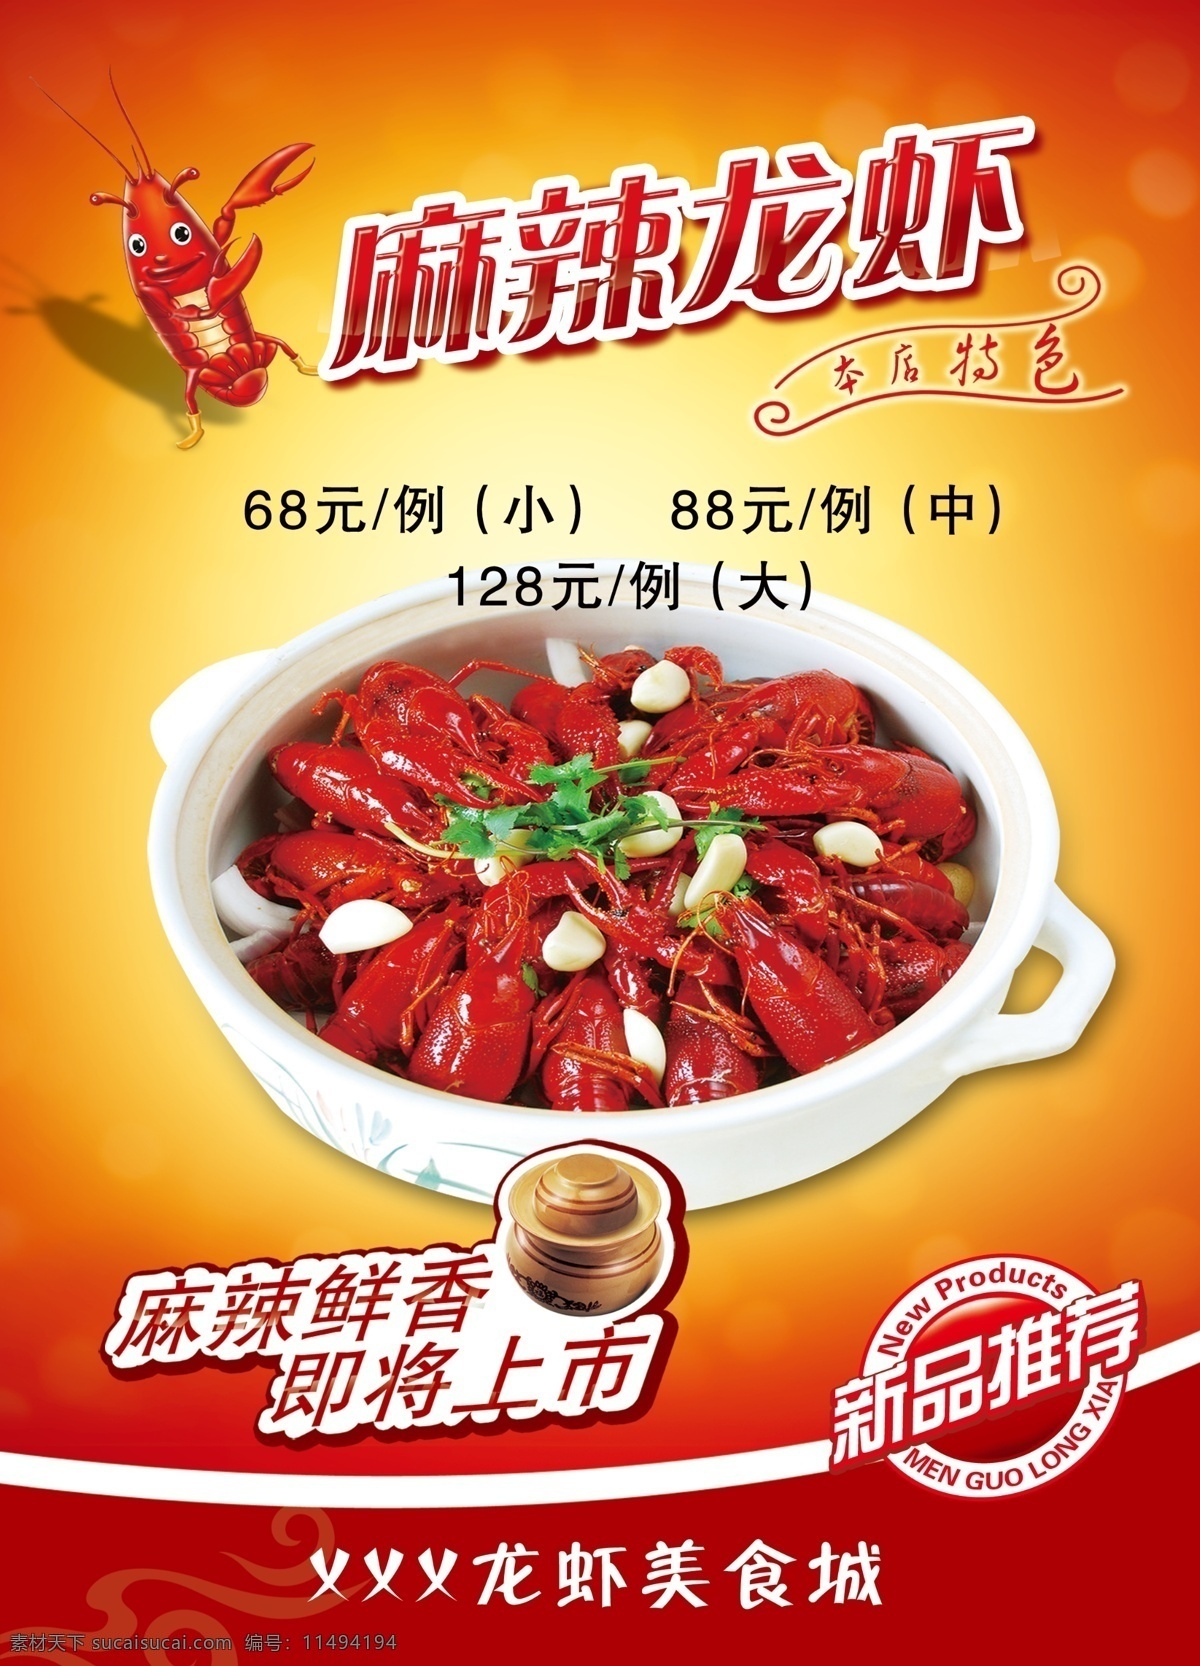 麻辣龙虾 美食城 龙虾图片 红色